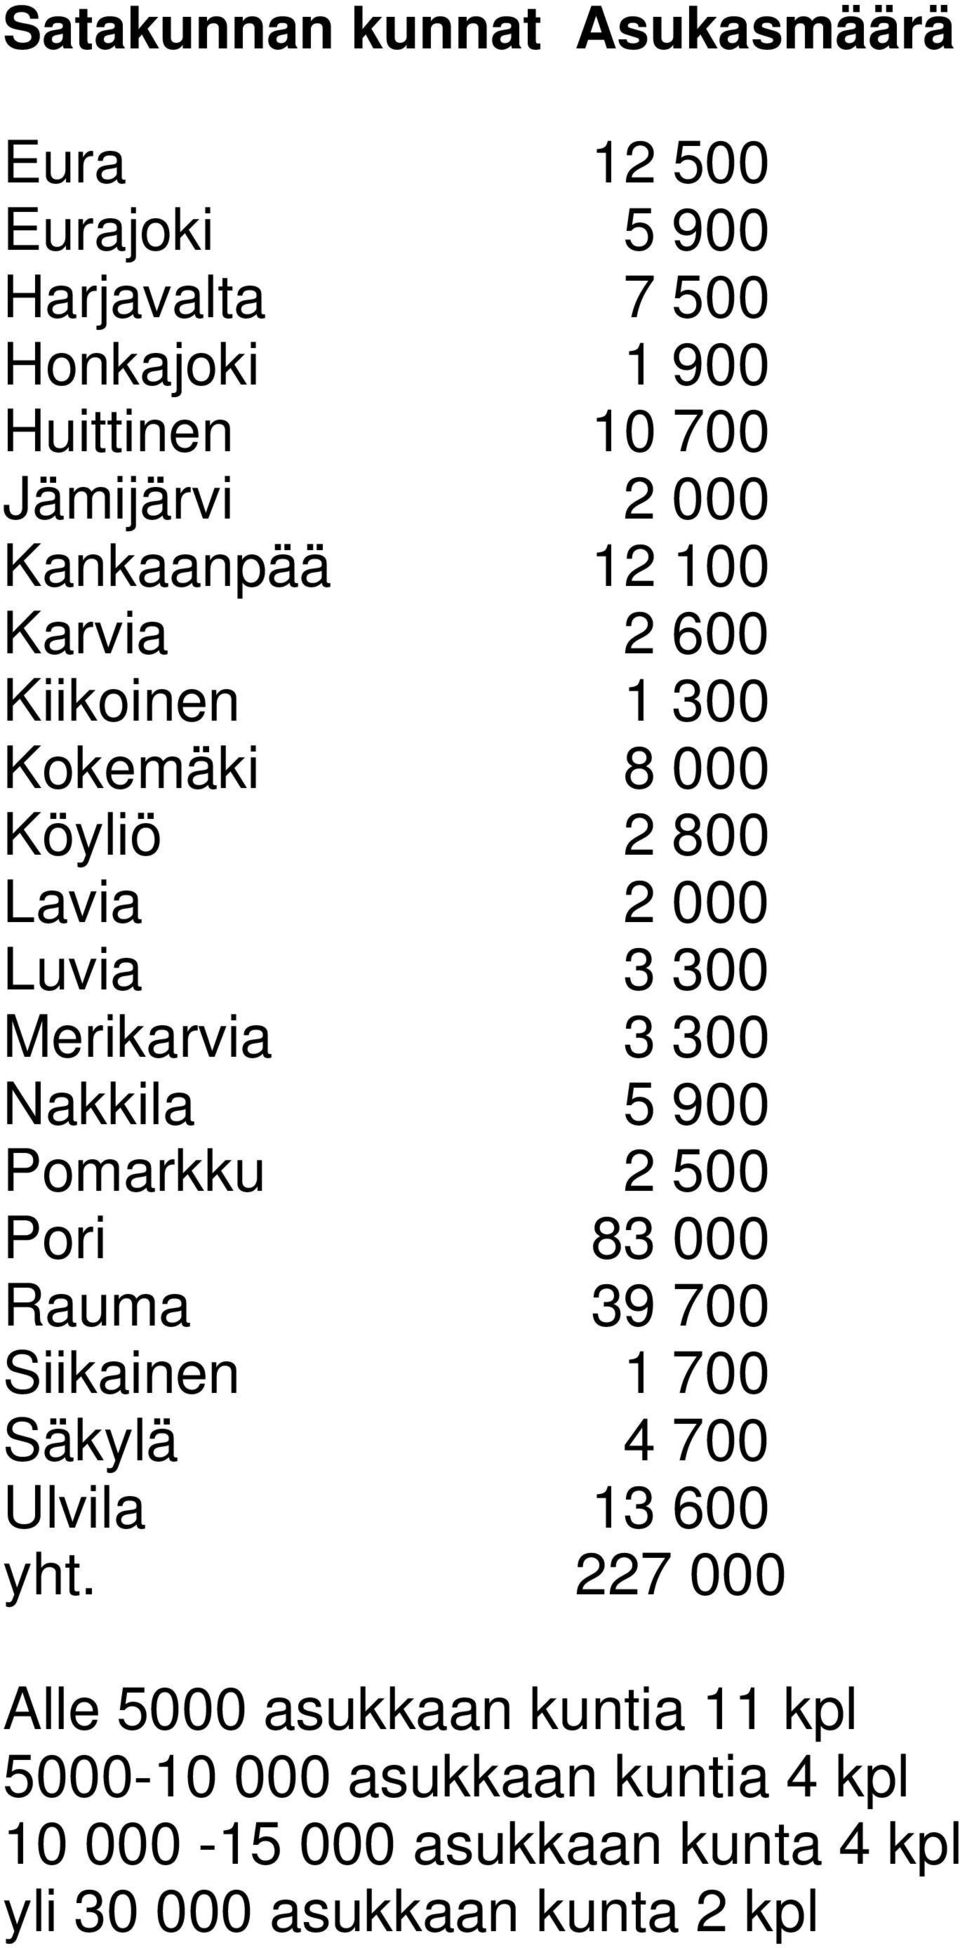 Nakkila 5 900 Pomarkku 2 500 Pori 83 000 Rauma 39 700 Siikainen 1 700 Säkylä 4 700 Ulvila 13 600 yht.